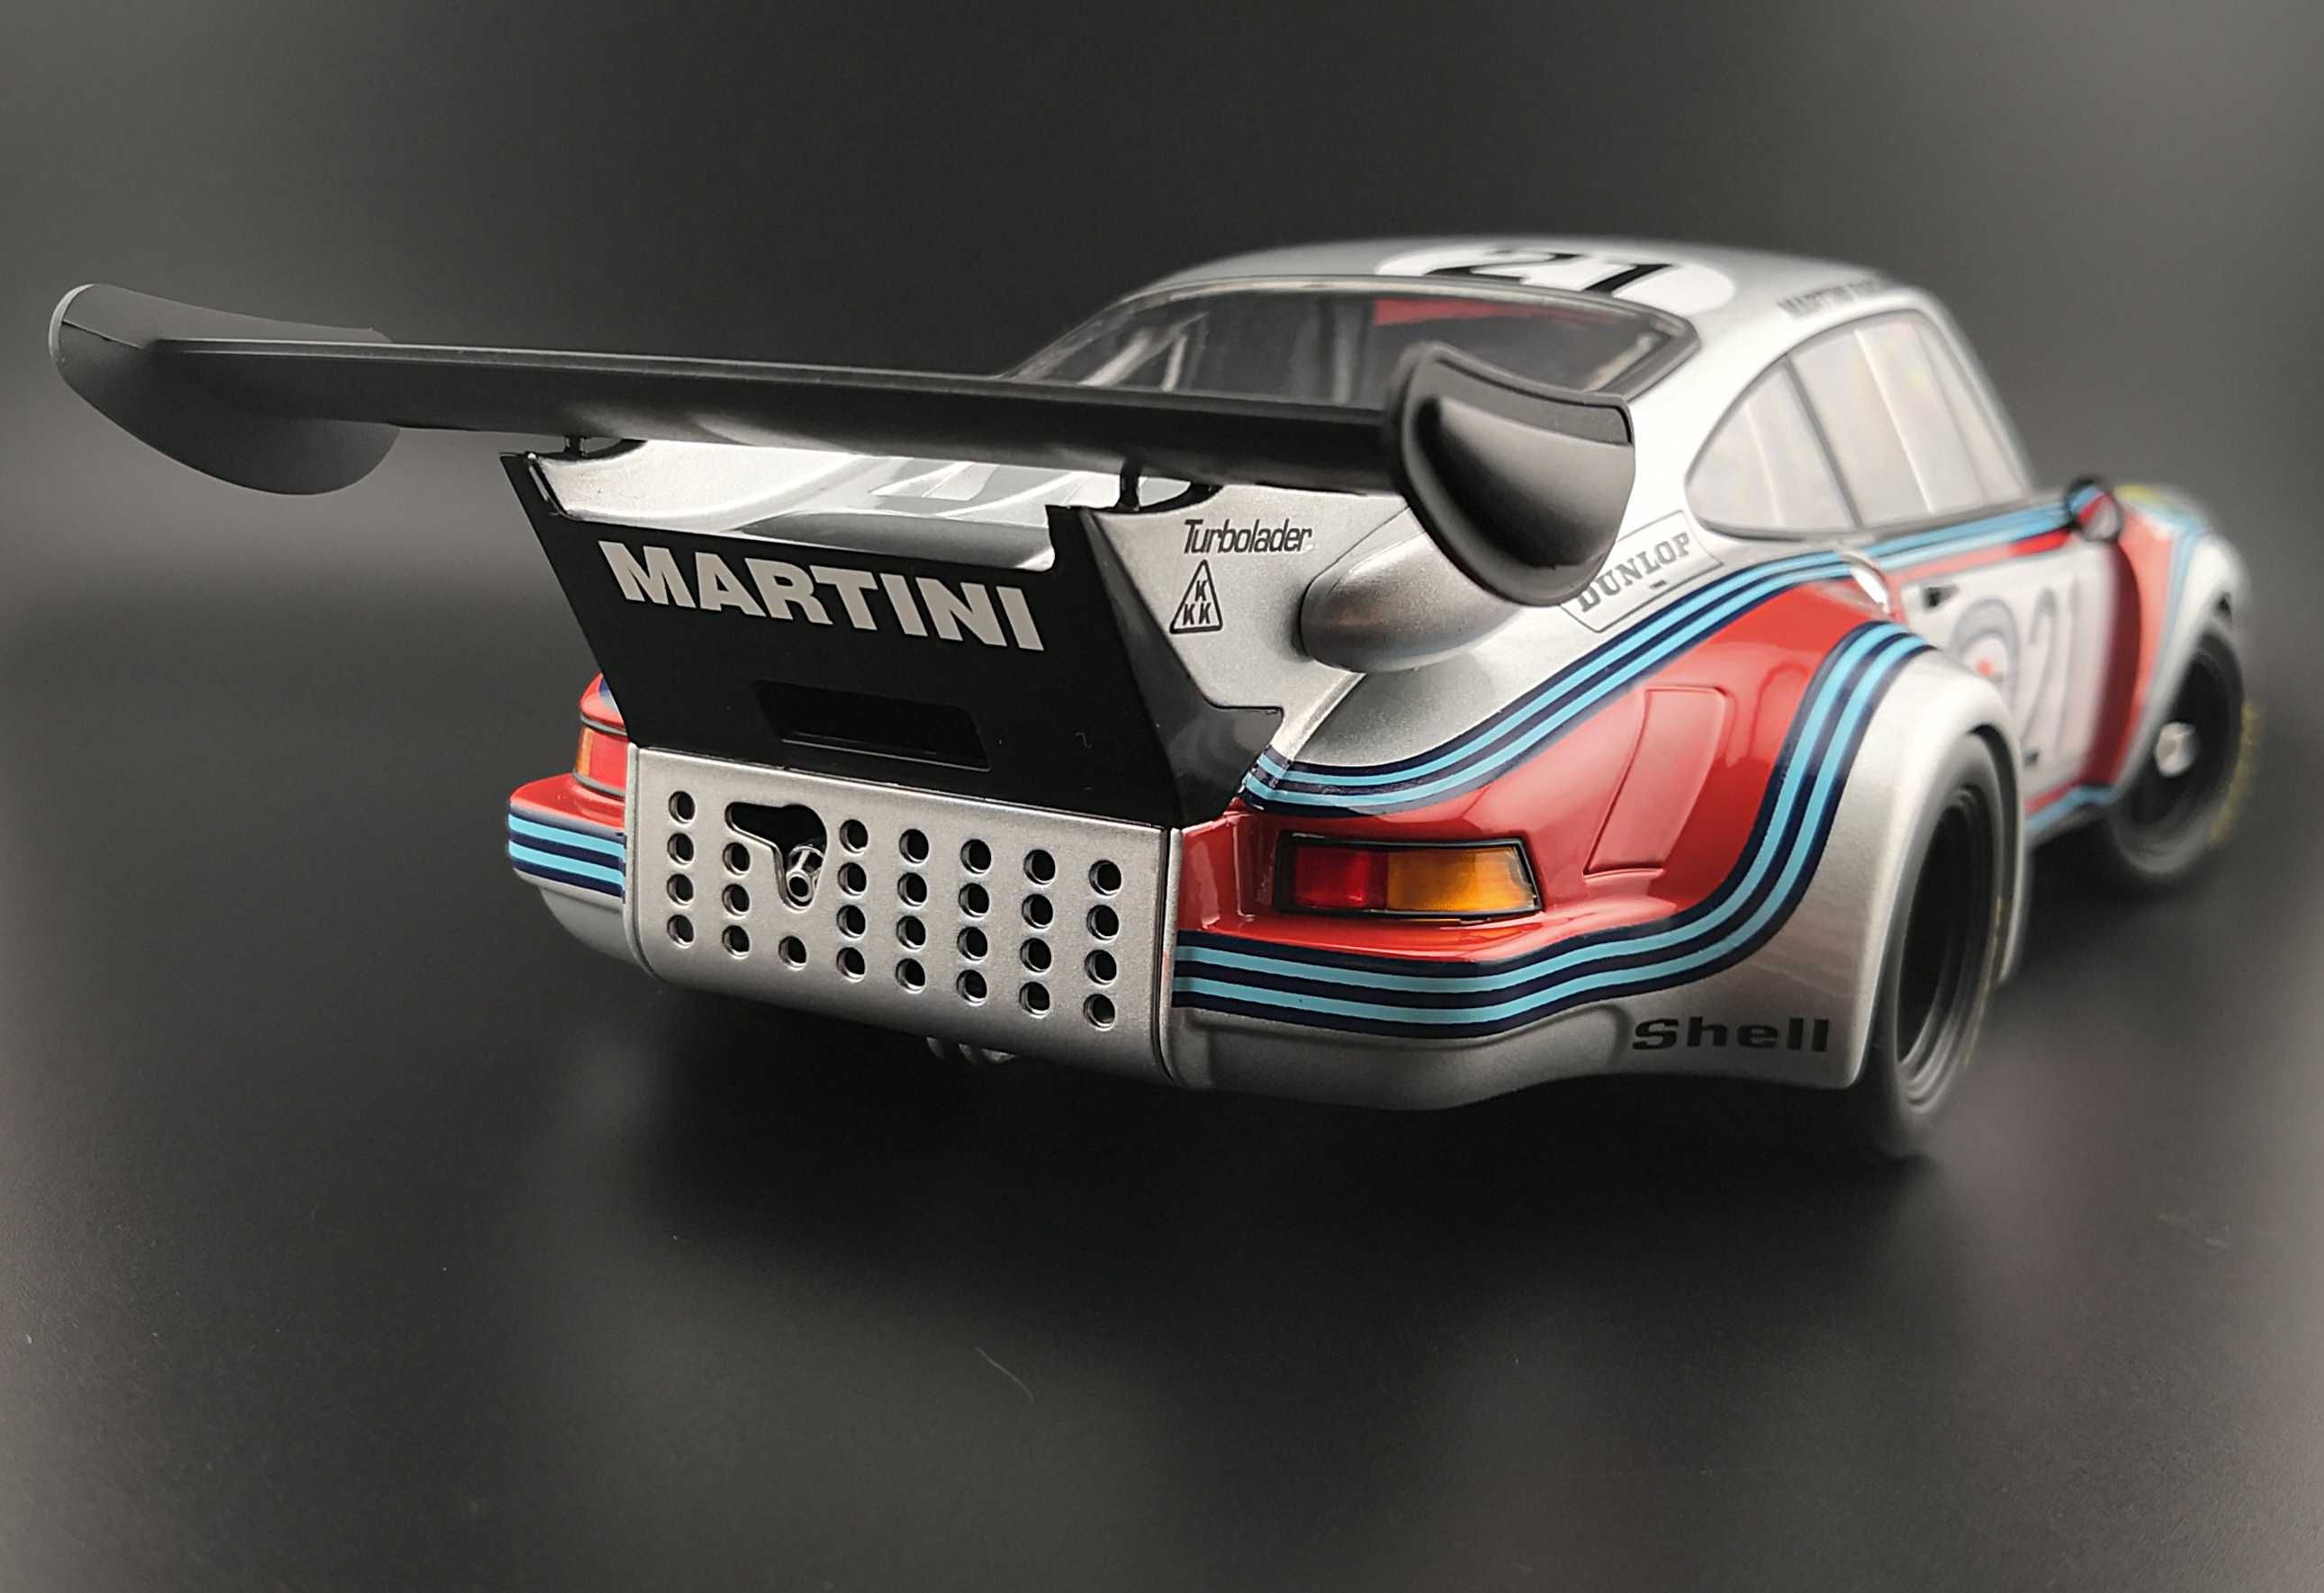 Macheta 1:18 Porsche 911 930 RSR TURBO 2.1L 24h LE MANS 1974 Norev